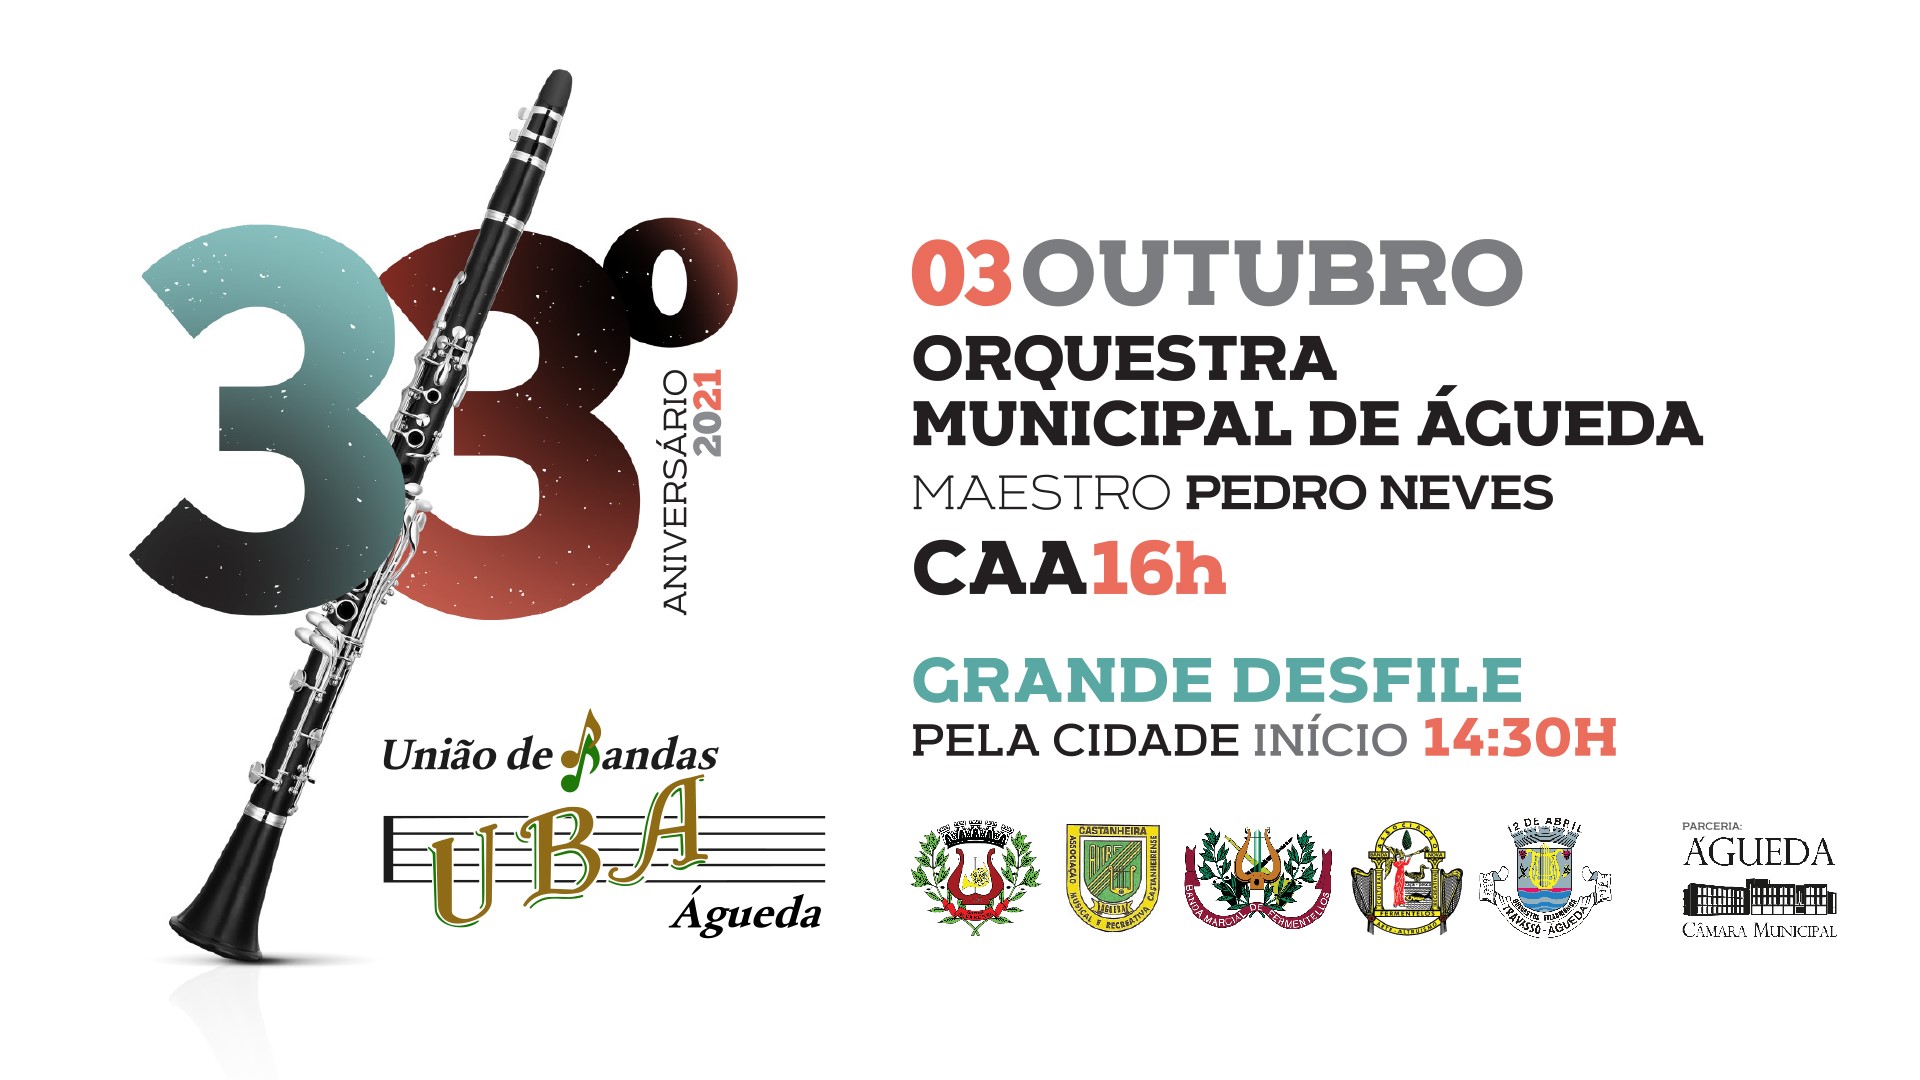 33º Aniversário UBA - União de Bandas de Águeda